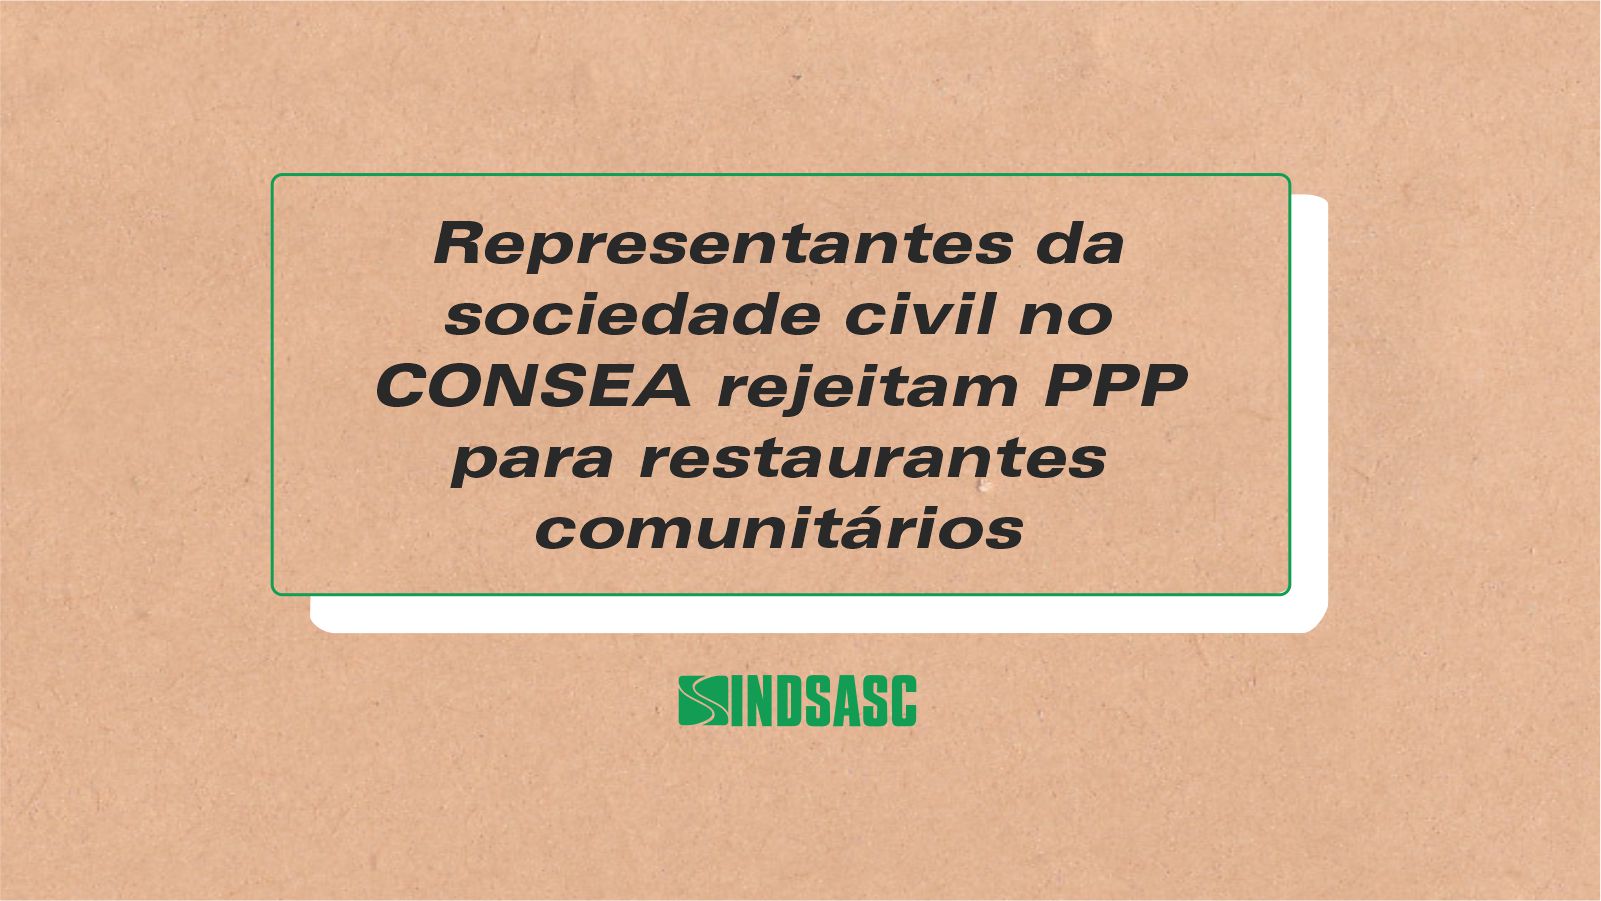 Representantes da sociedade civil no CONSEA rejeitam PPP para restaurantes comunitários